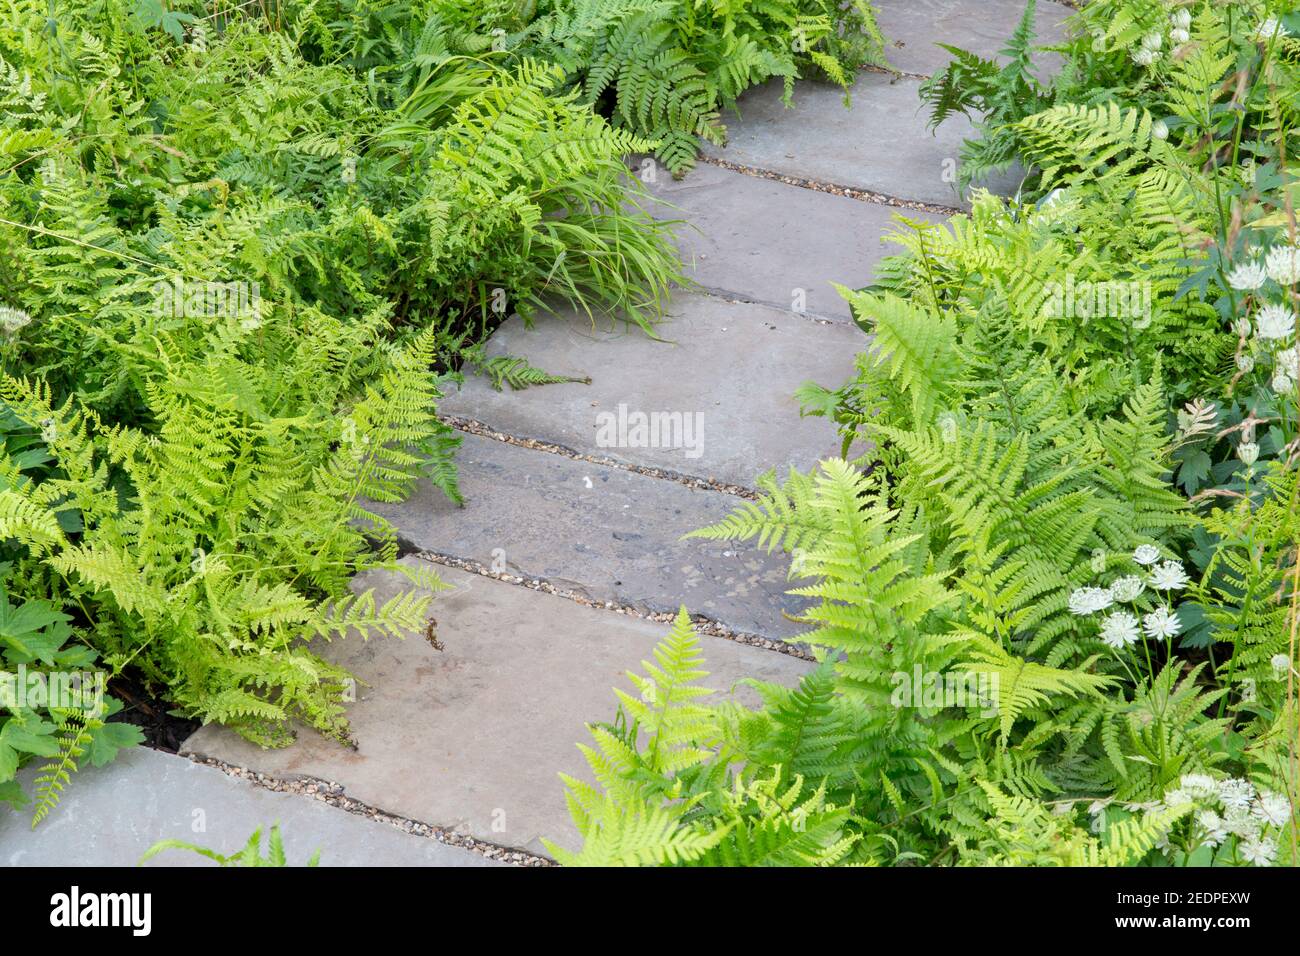 Ein englischer schattiger Vorgarten Steinplatten Weg mit Bepflanzung Von Hosta und Farne in grünen Pflanzschema Farben Farben England GB Großbritannien Stockfoto